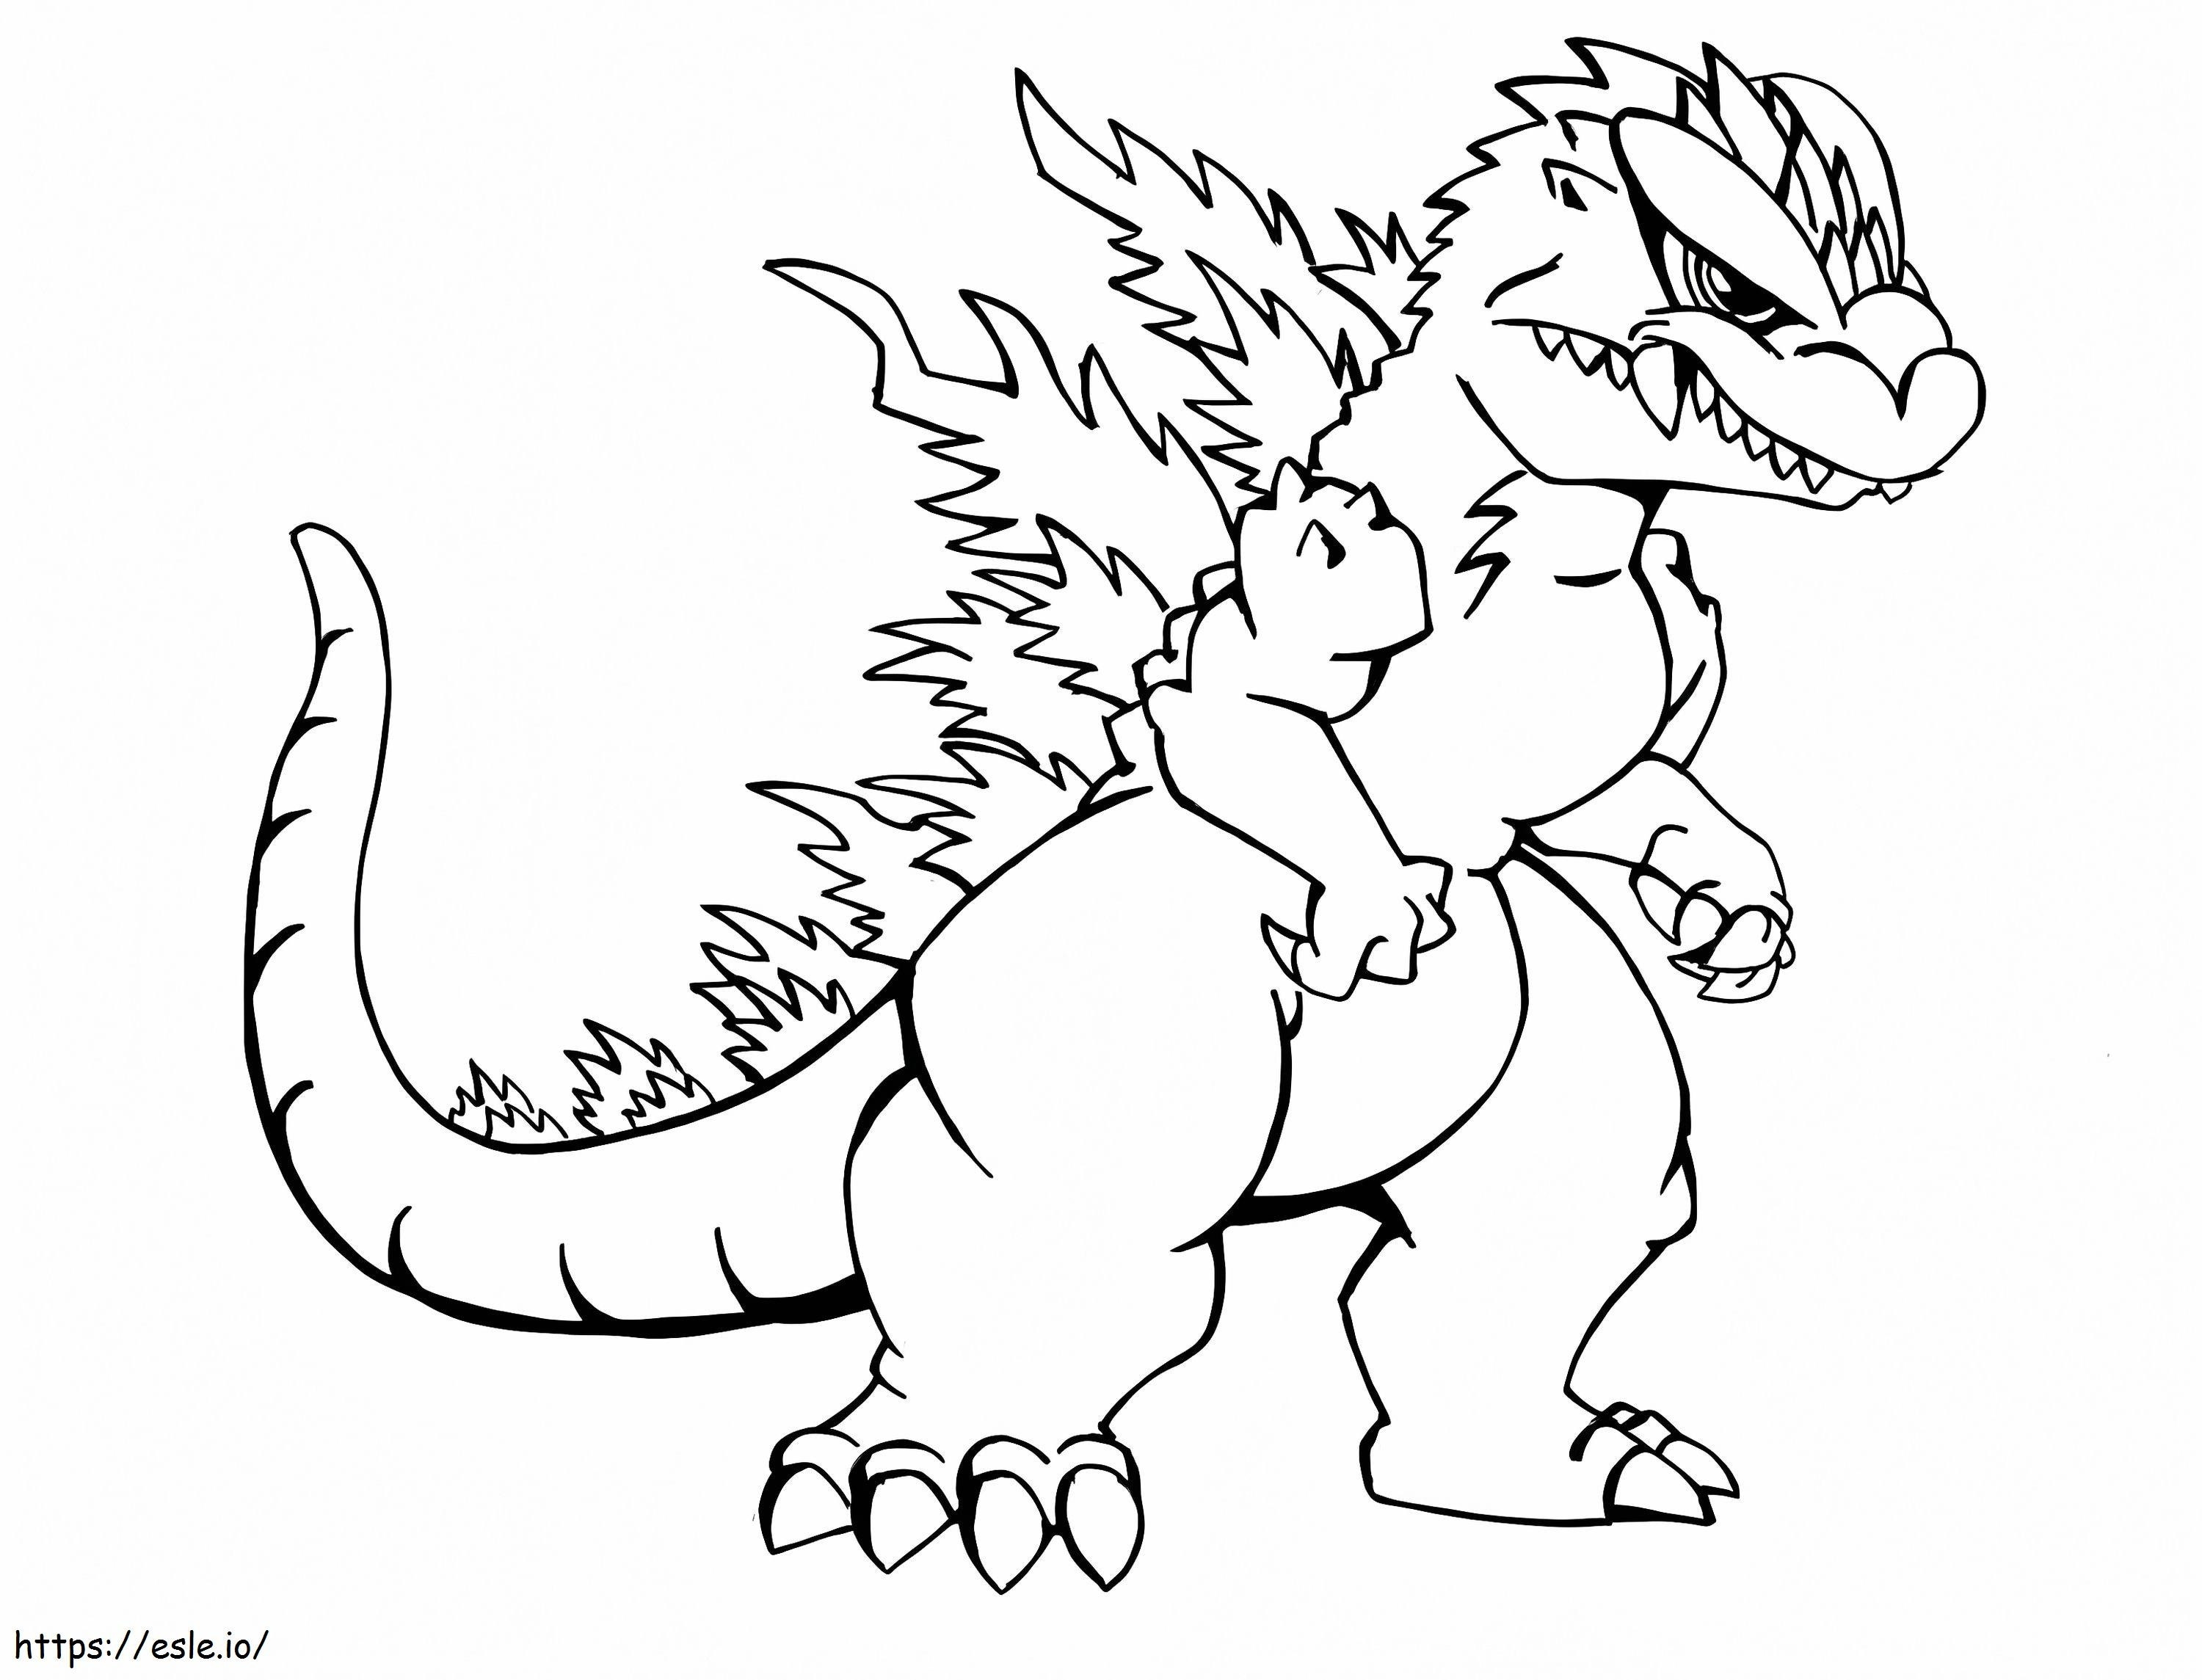 Little Godzilla coloring page